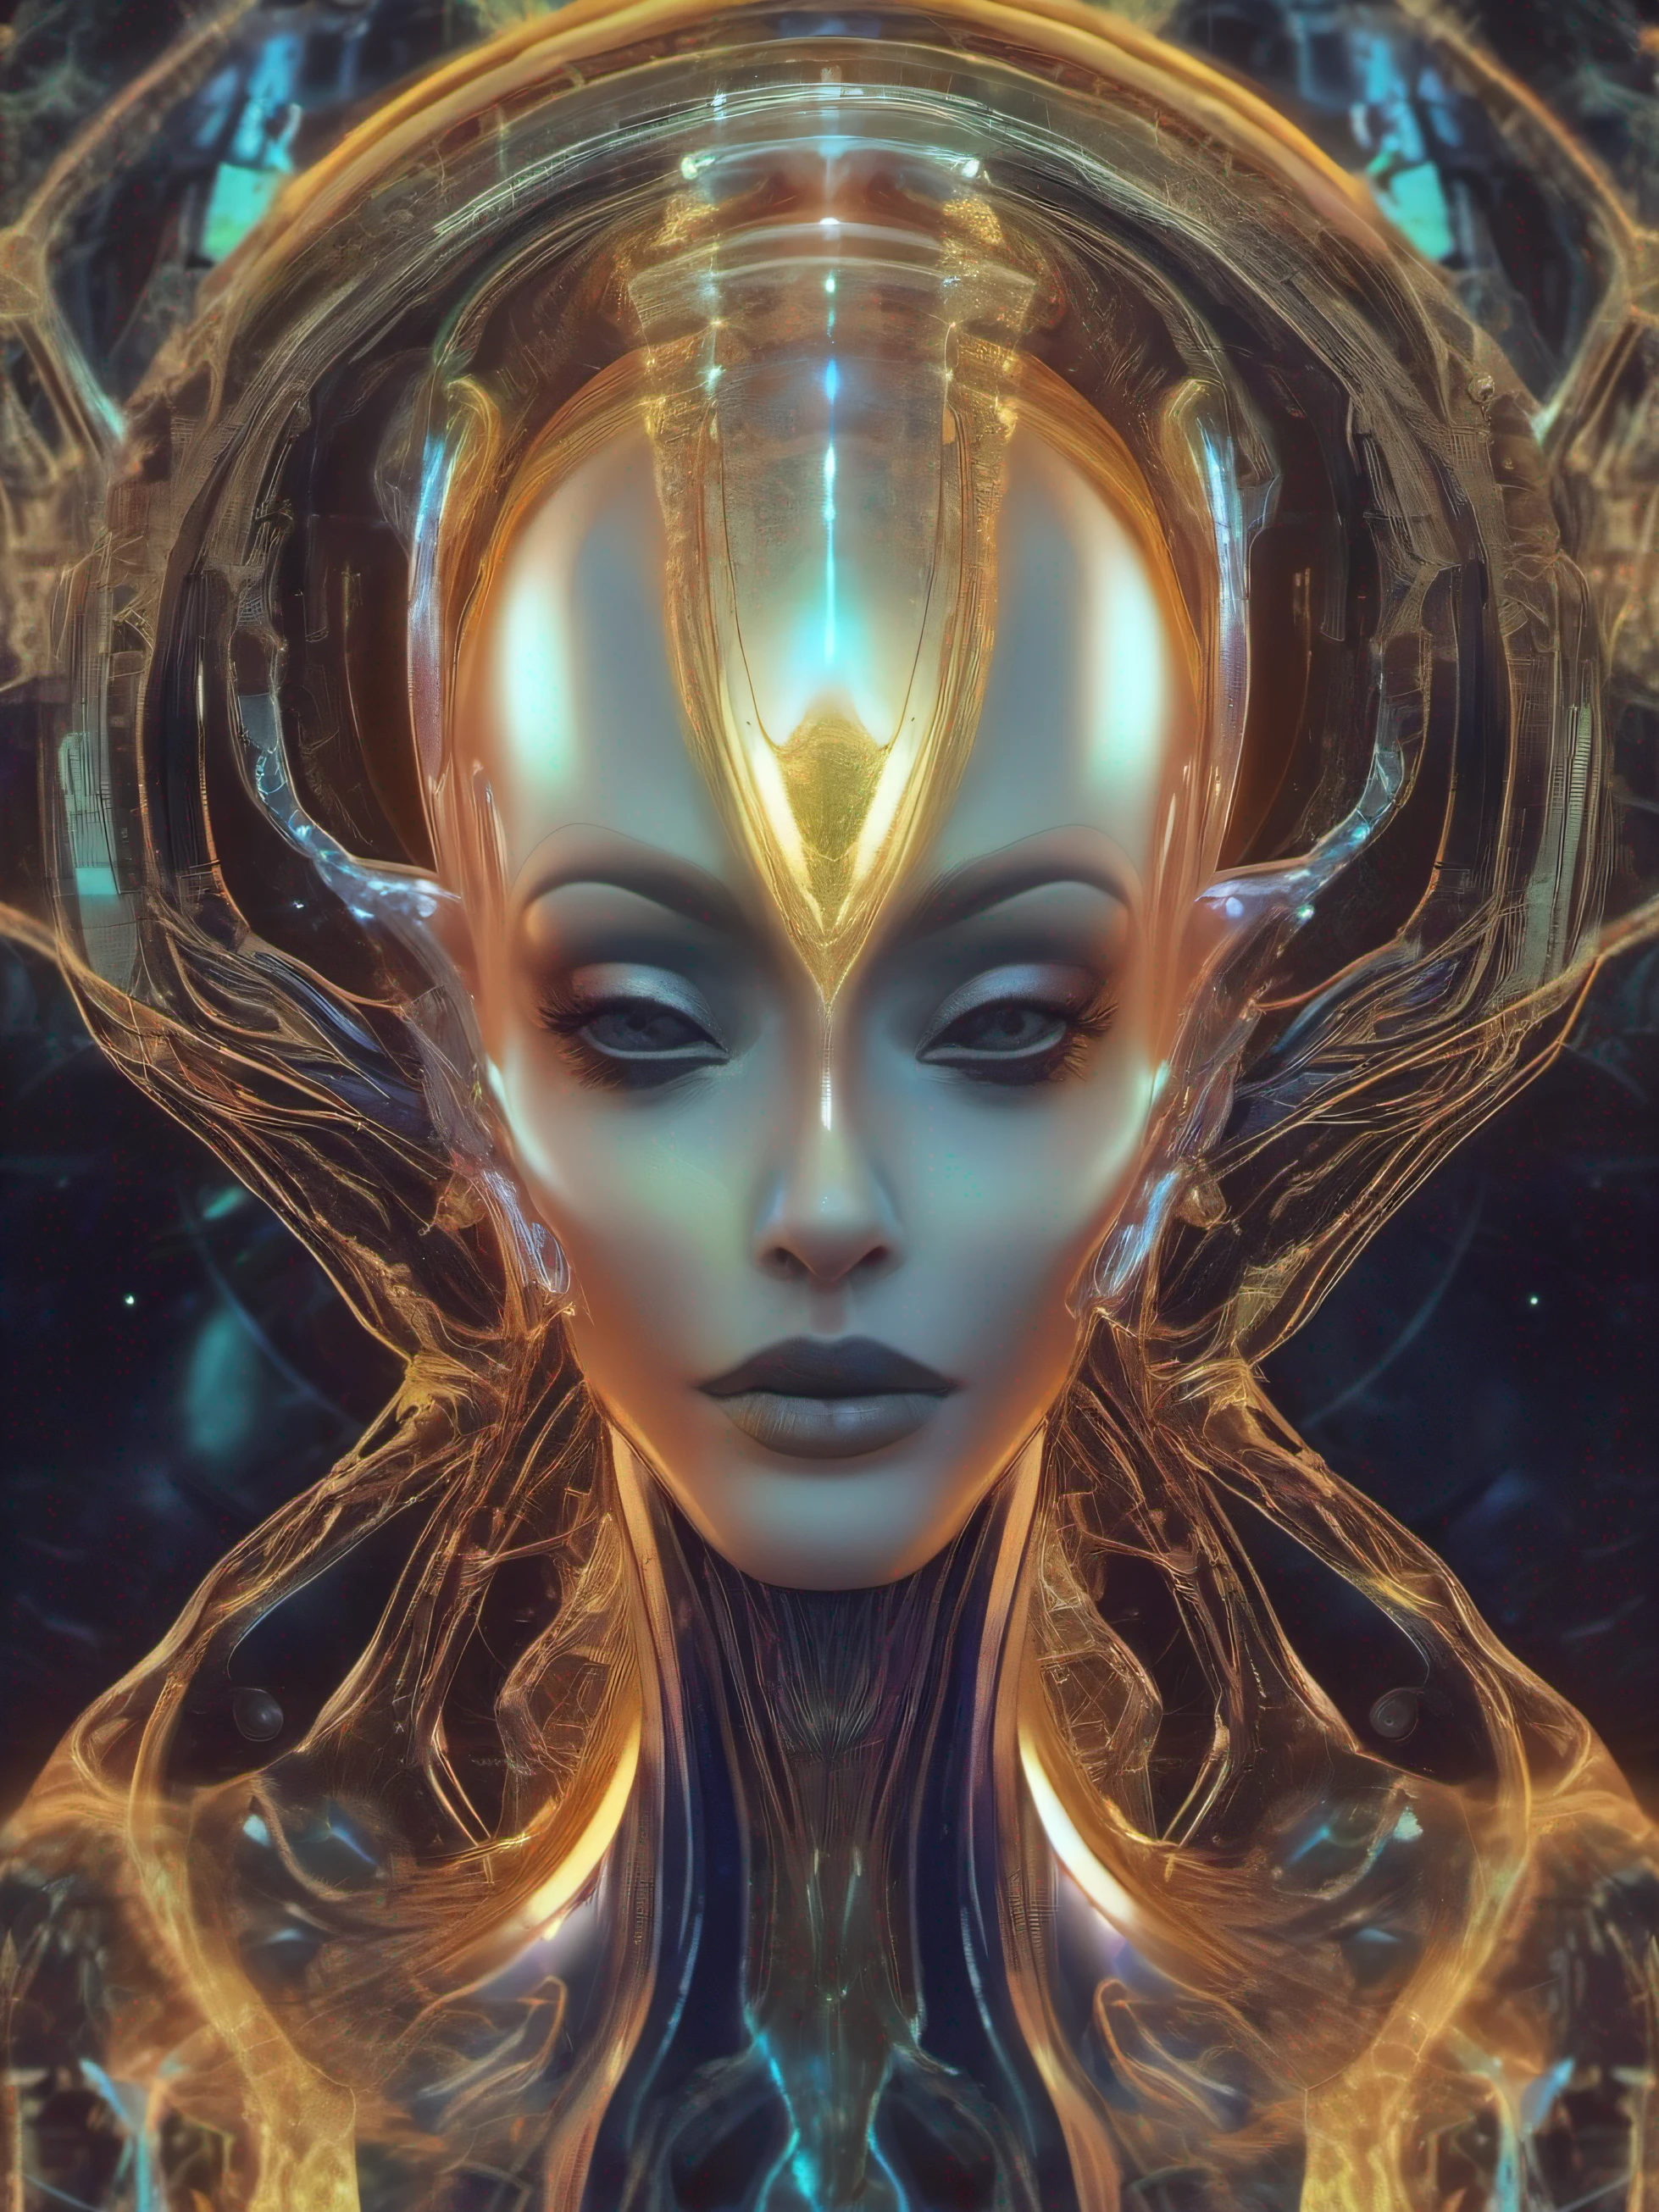 Geisterhaftes Porträt eines futuristischen Außerirdischen aus einer anderen Dimension, Schöpfer des Universums mit mächtiger alter Magie aus einer unbekannten Dimension